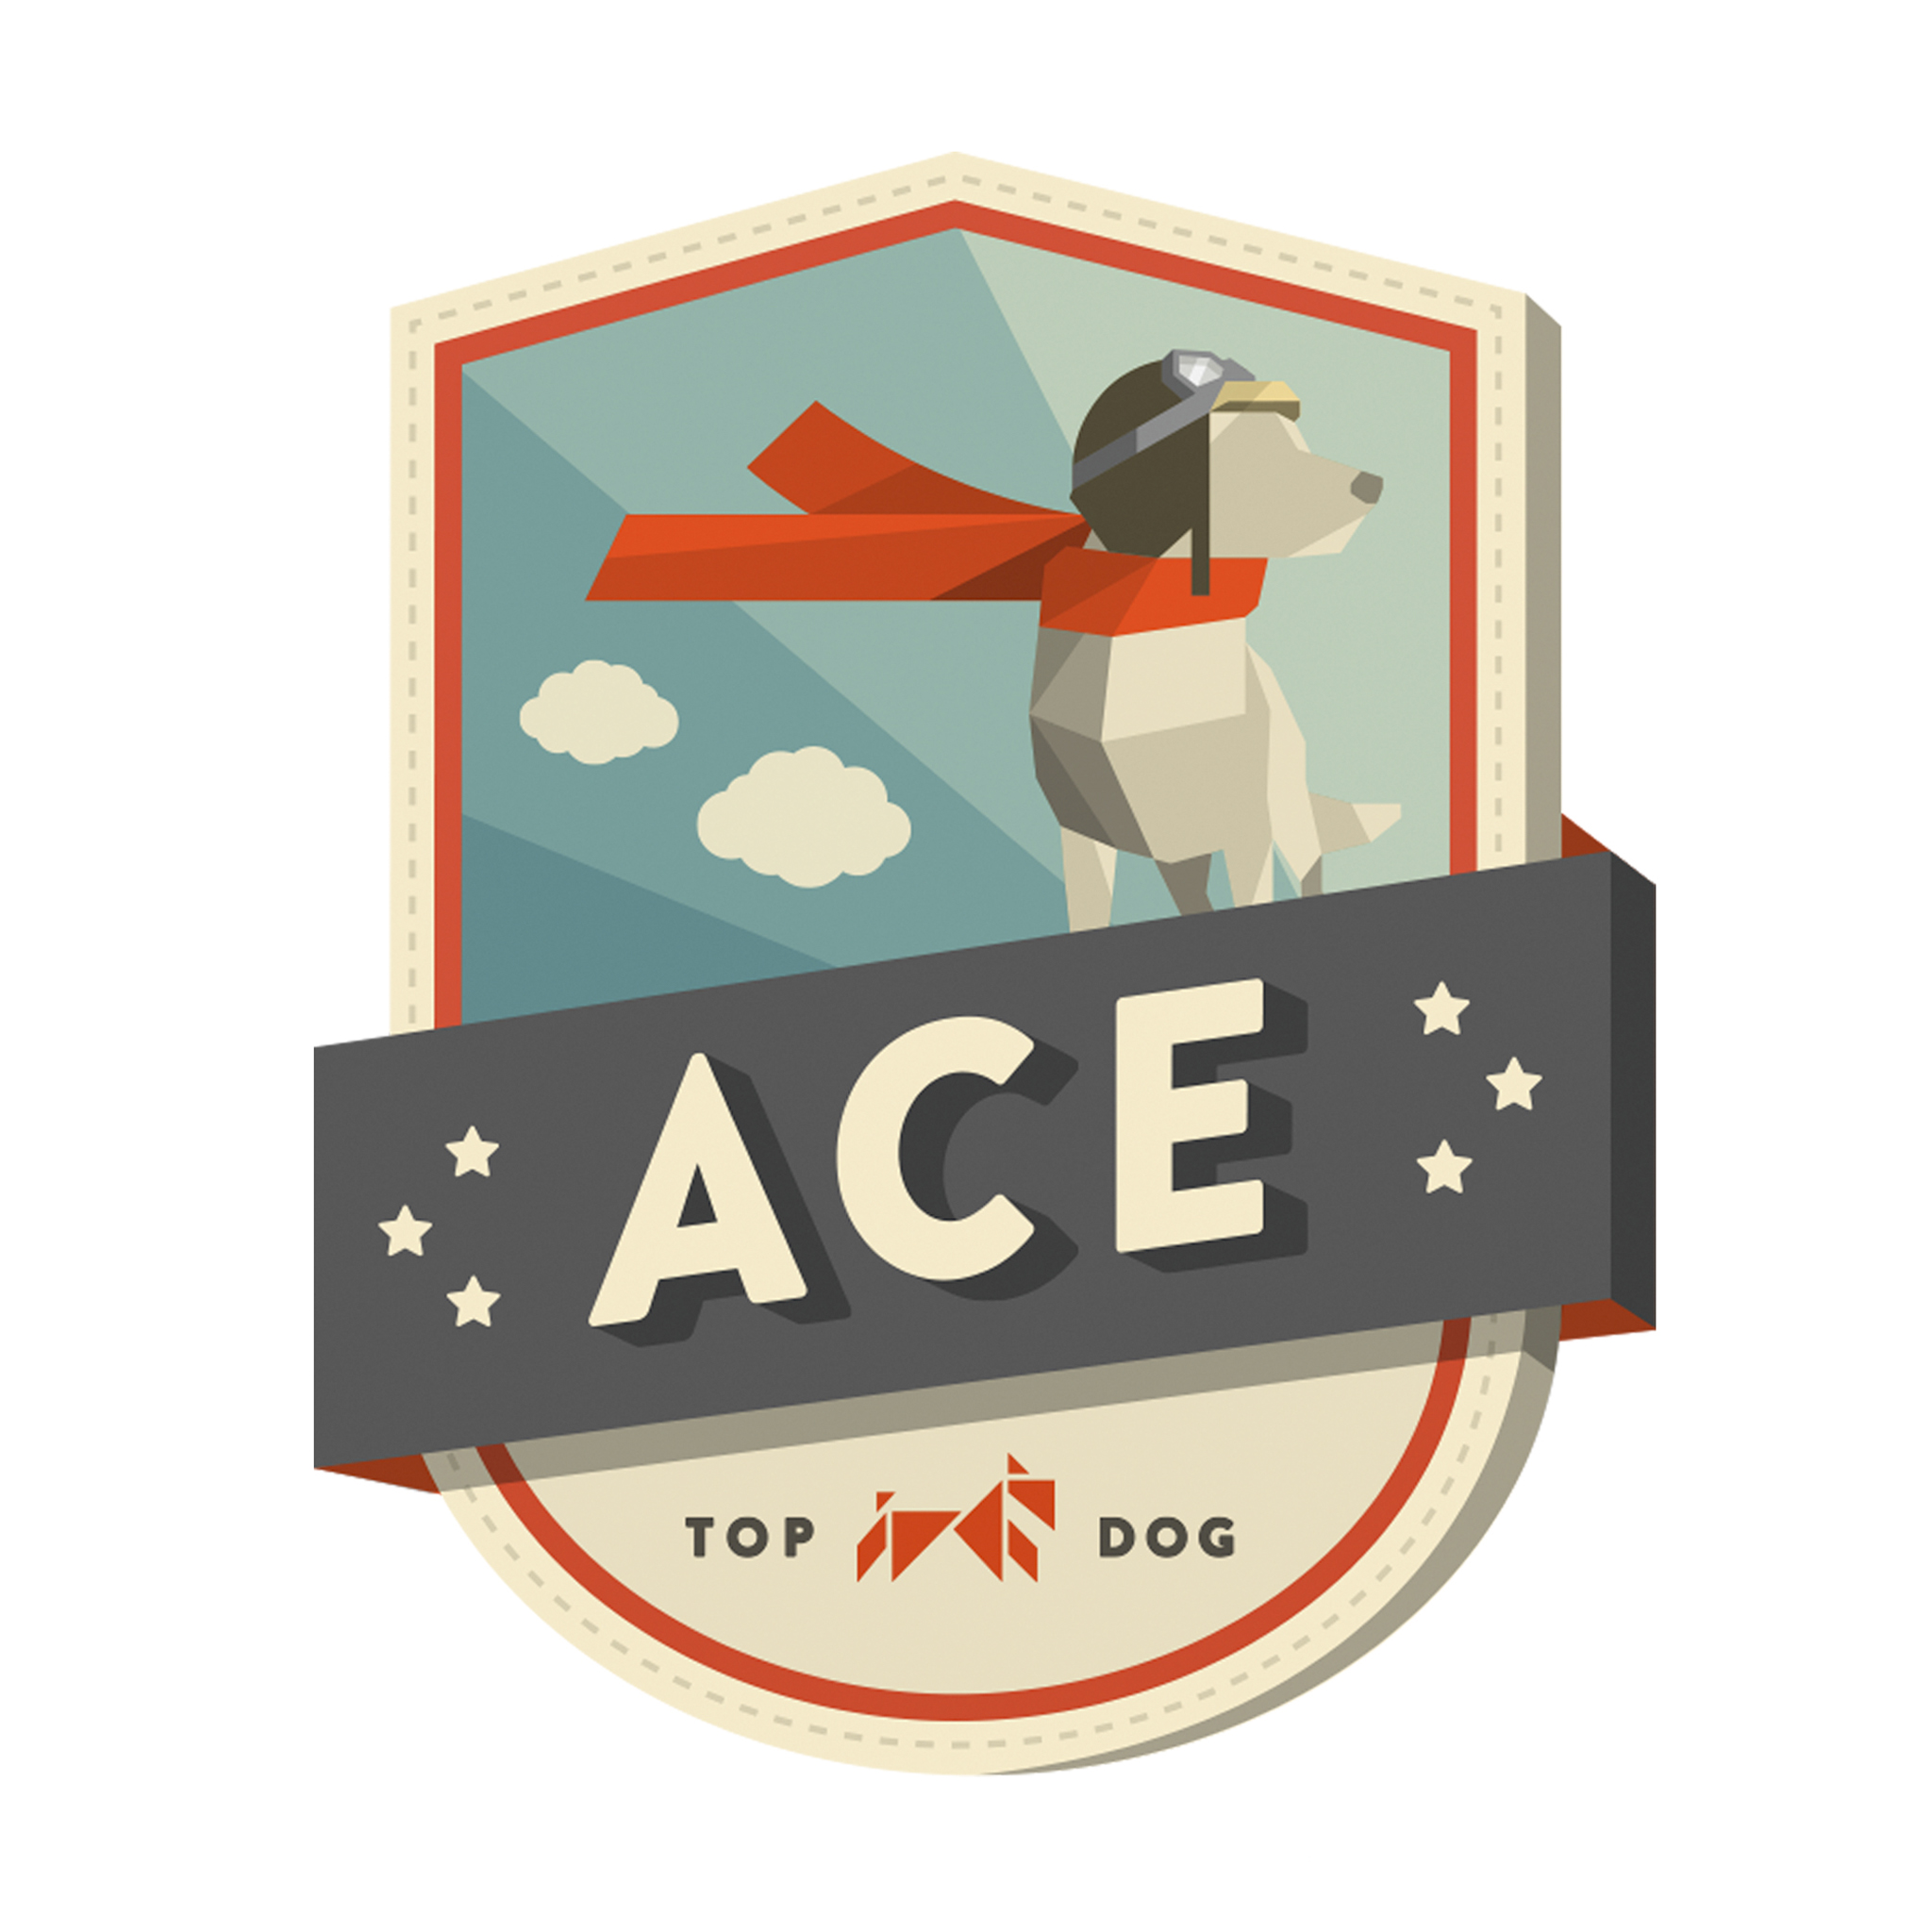 Dognition Profile Badges: Ace